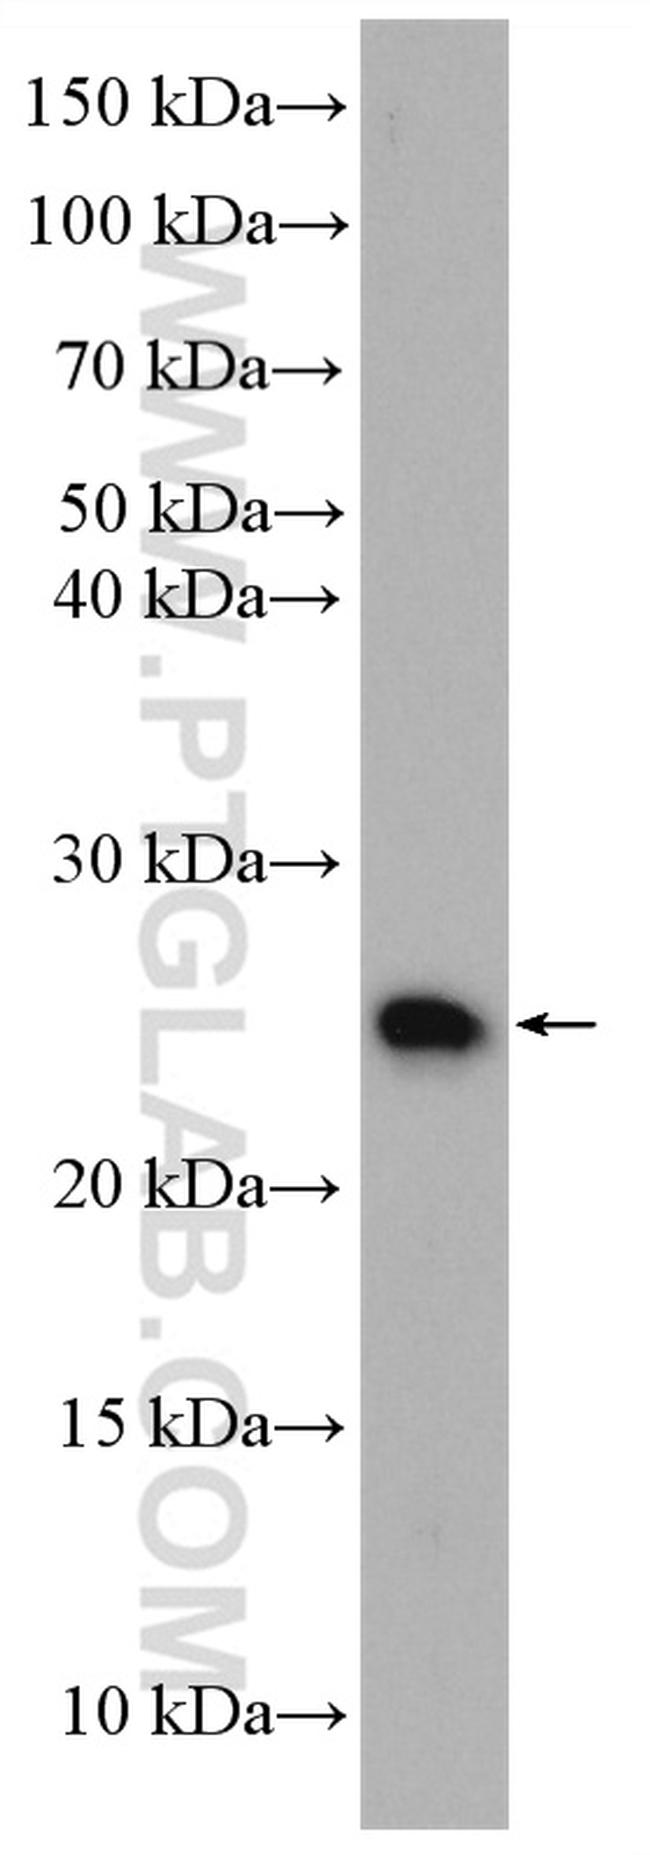 N6AMT2 Antibody in Western Blot (WB)